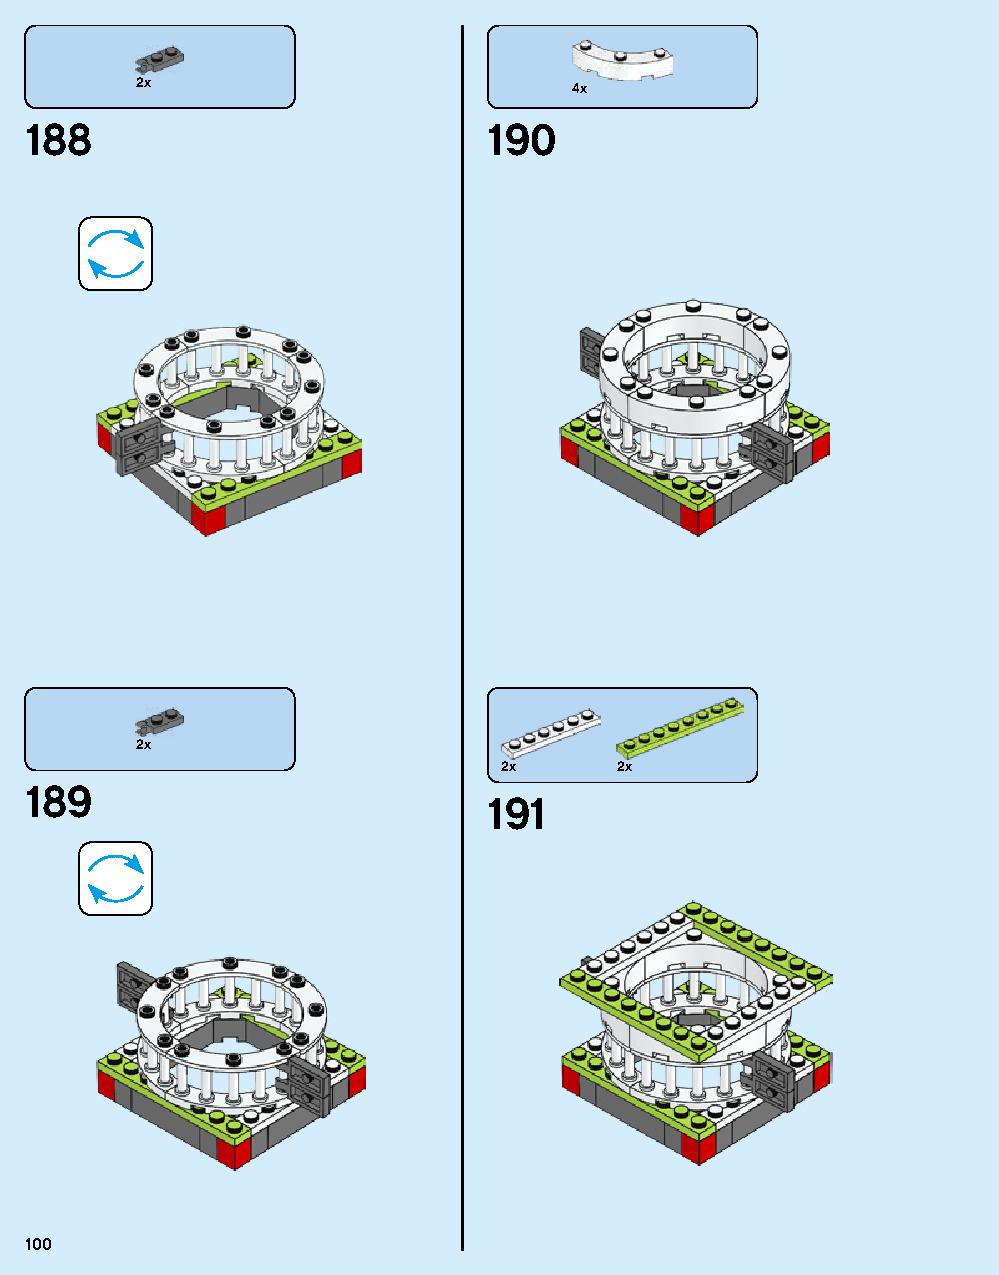 ニンジャゴー シティ 70620 レゴの商品情報 レゴの説明書・組立方法 100 page